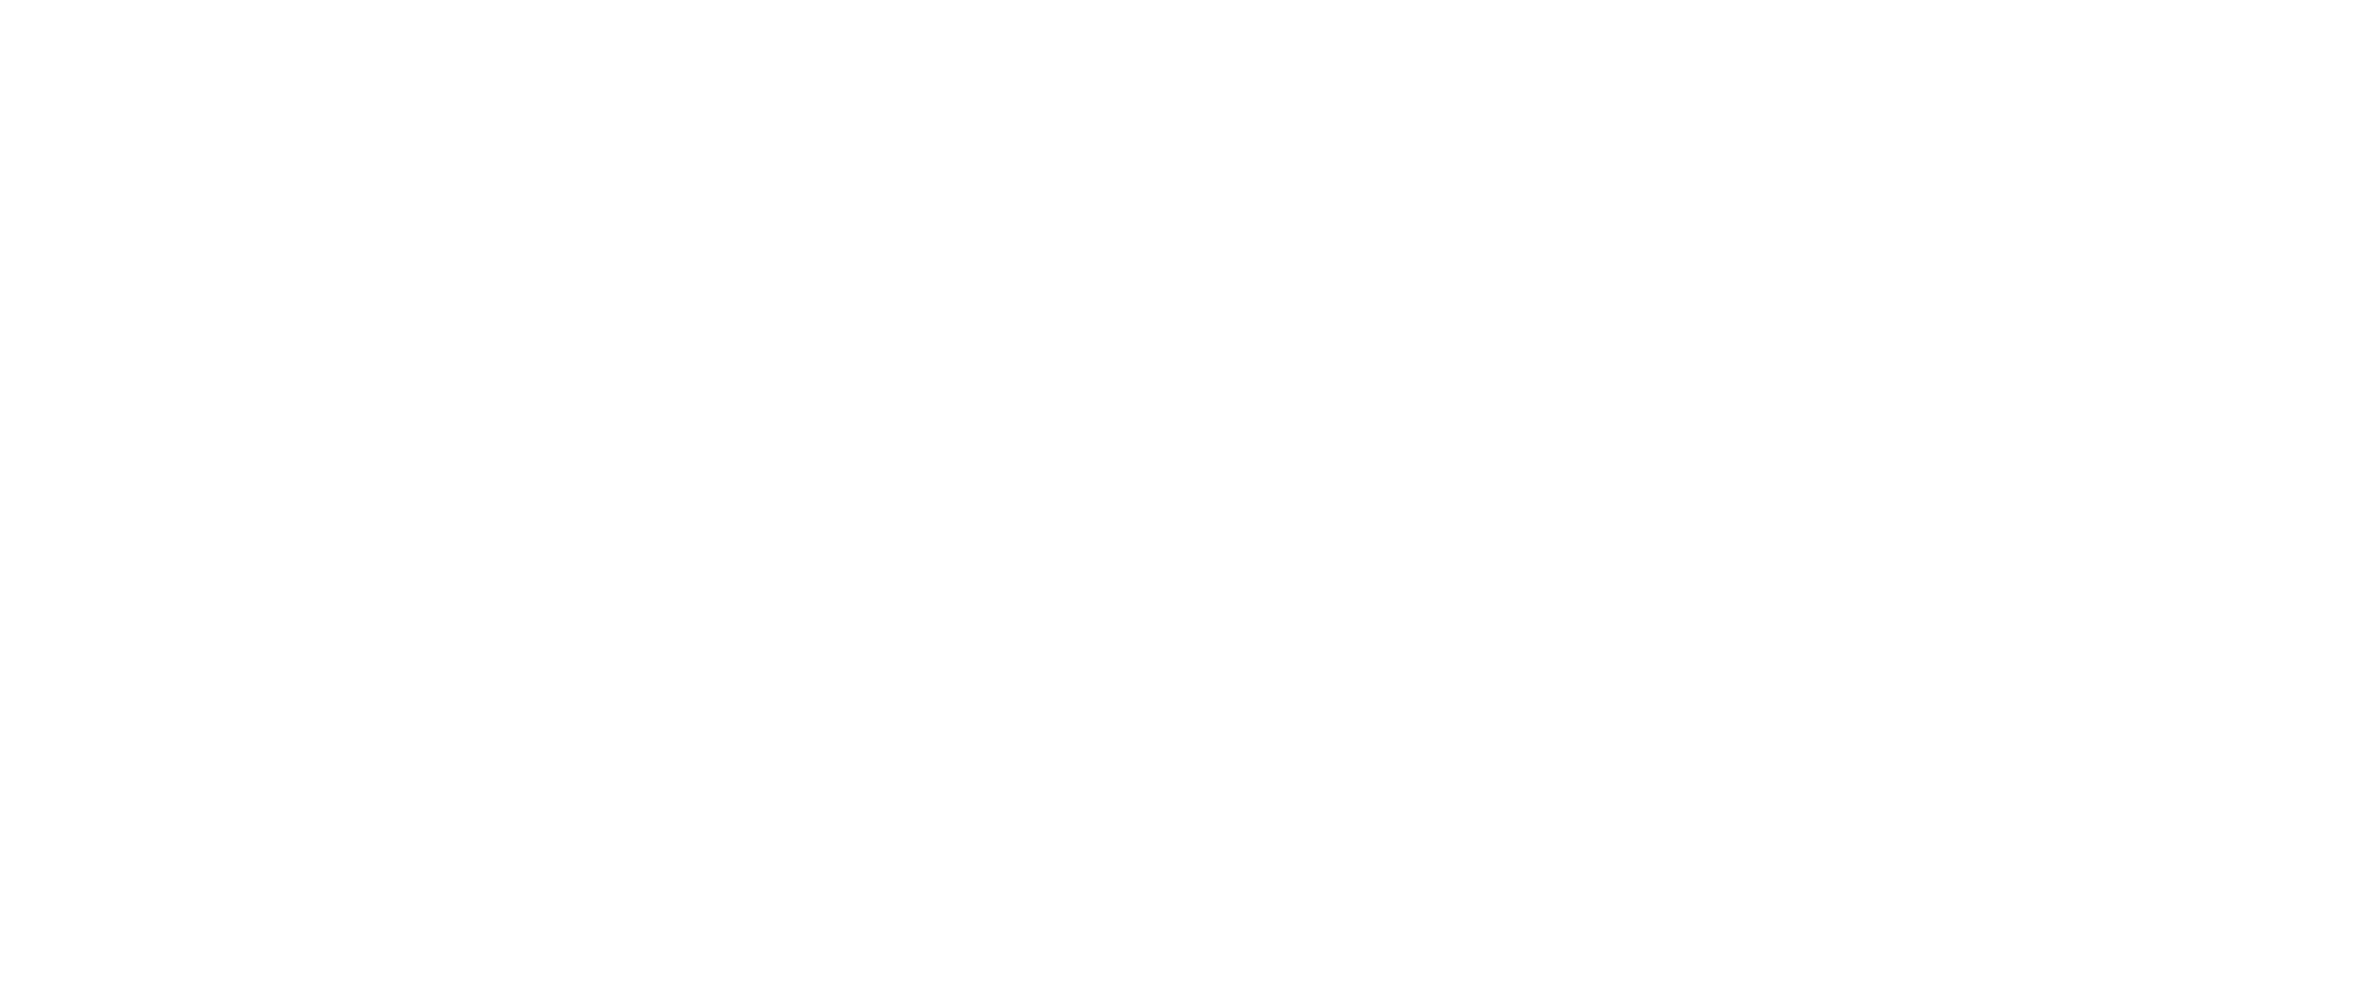 Dzata Cement Limited